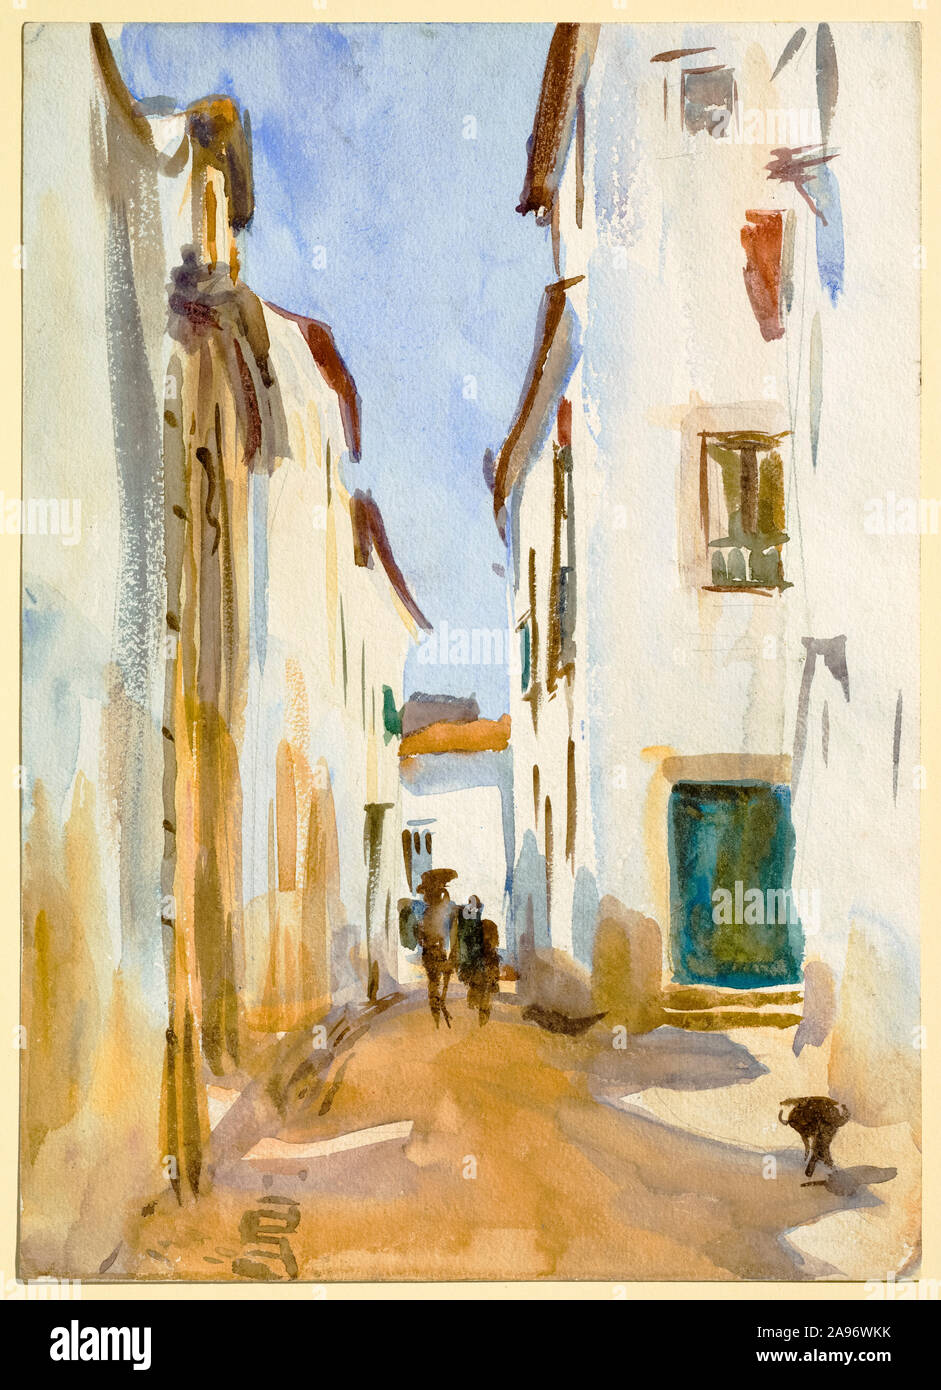 John Singer Sargent, une scène de rue, de l'Espagne, peinture, 1862-1895 Banque D'Images